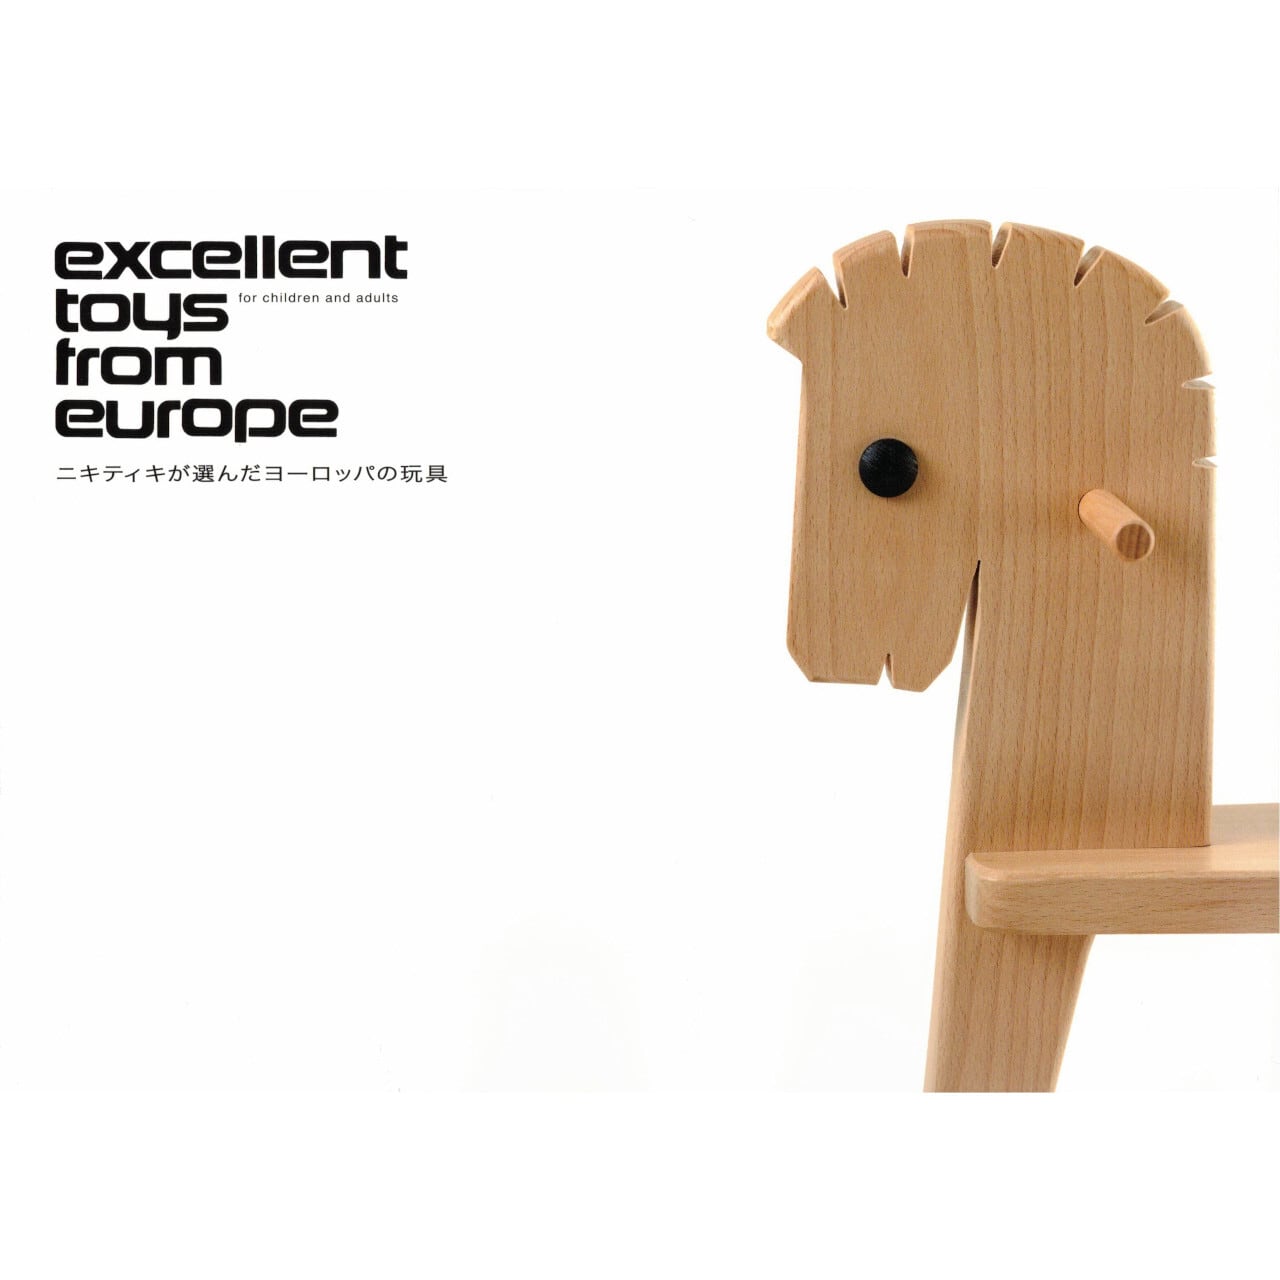 ニキティキが選んだヨーロッパの玩具 No.13 アトリエニキティキ | 木の